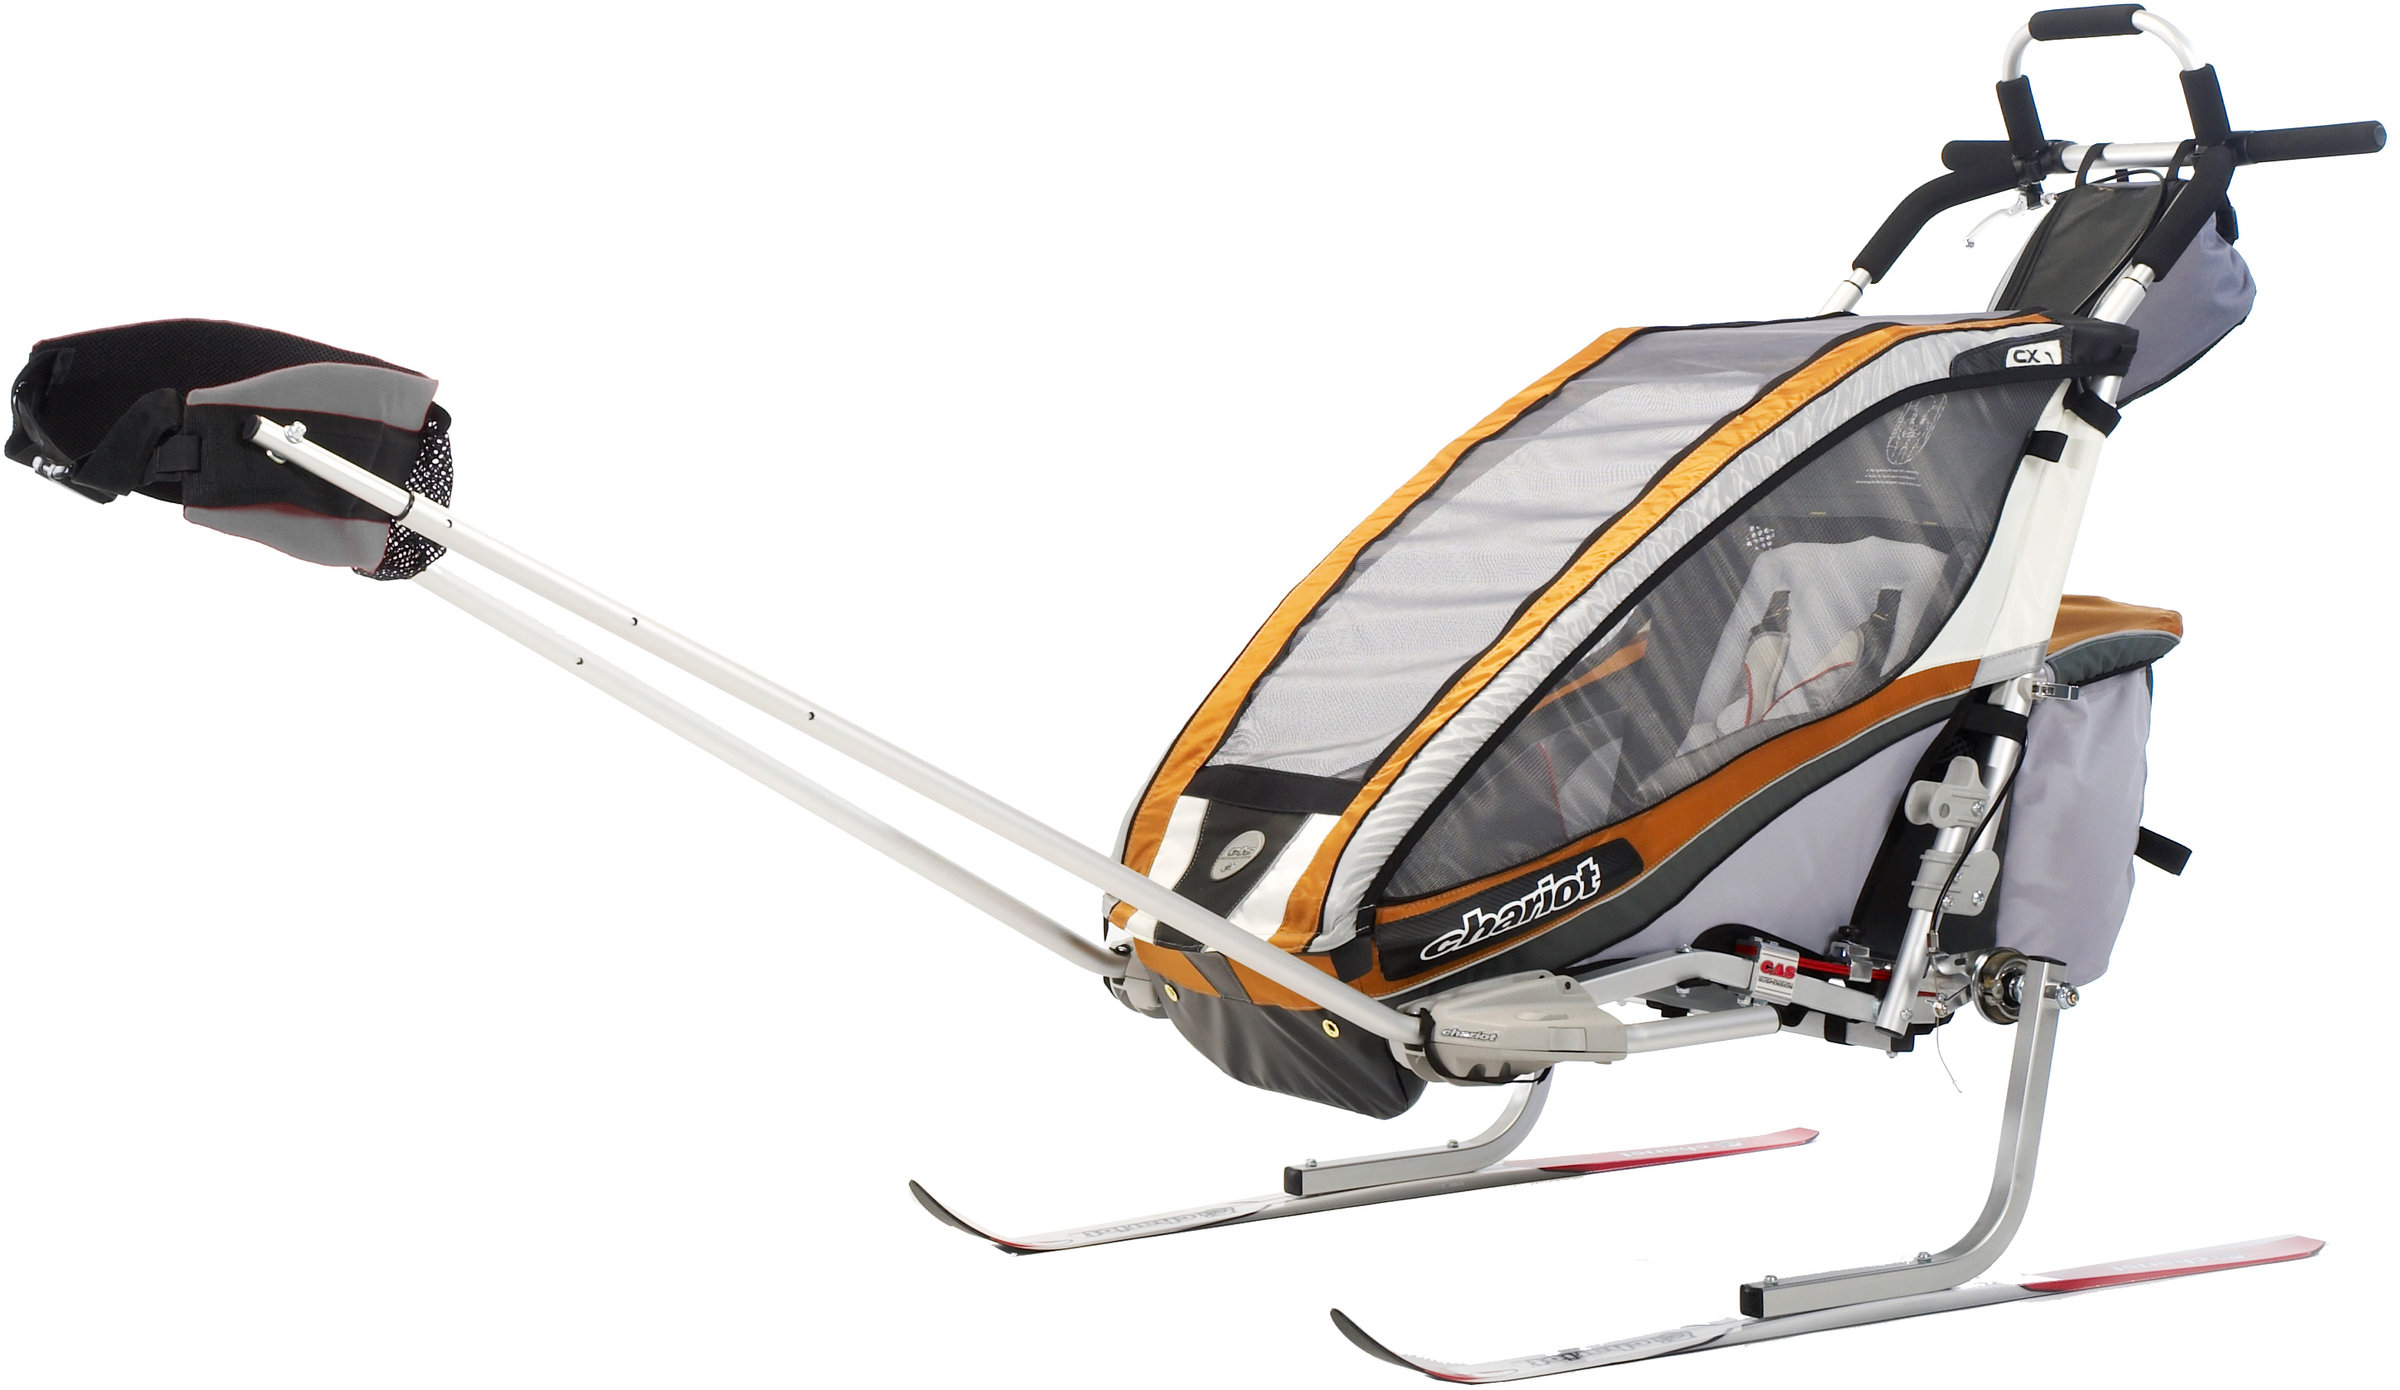 chariot cougar 1 ski kit